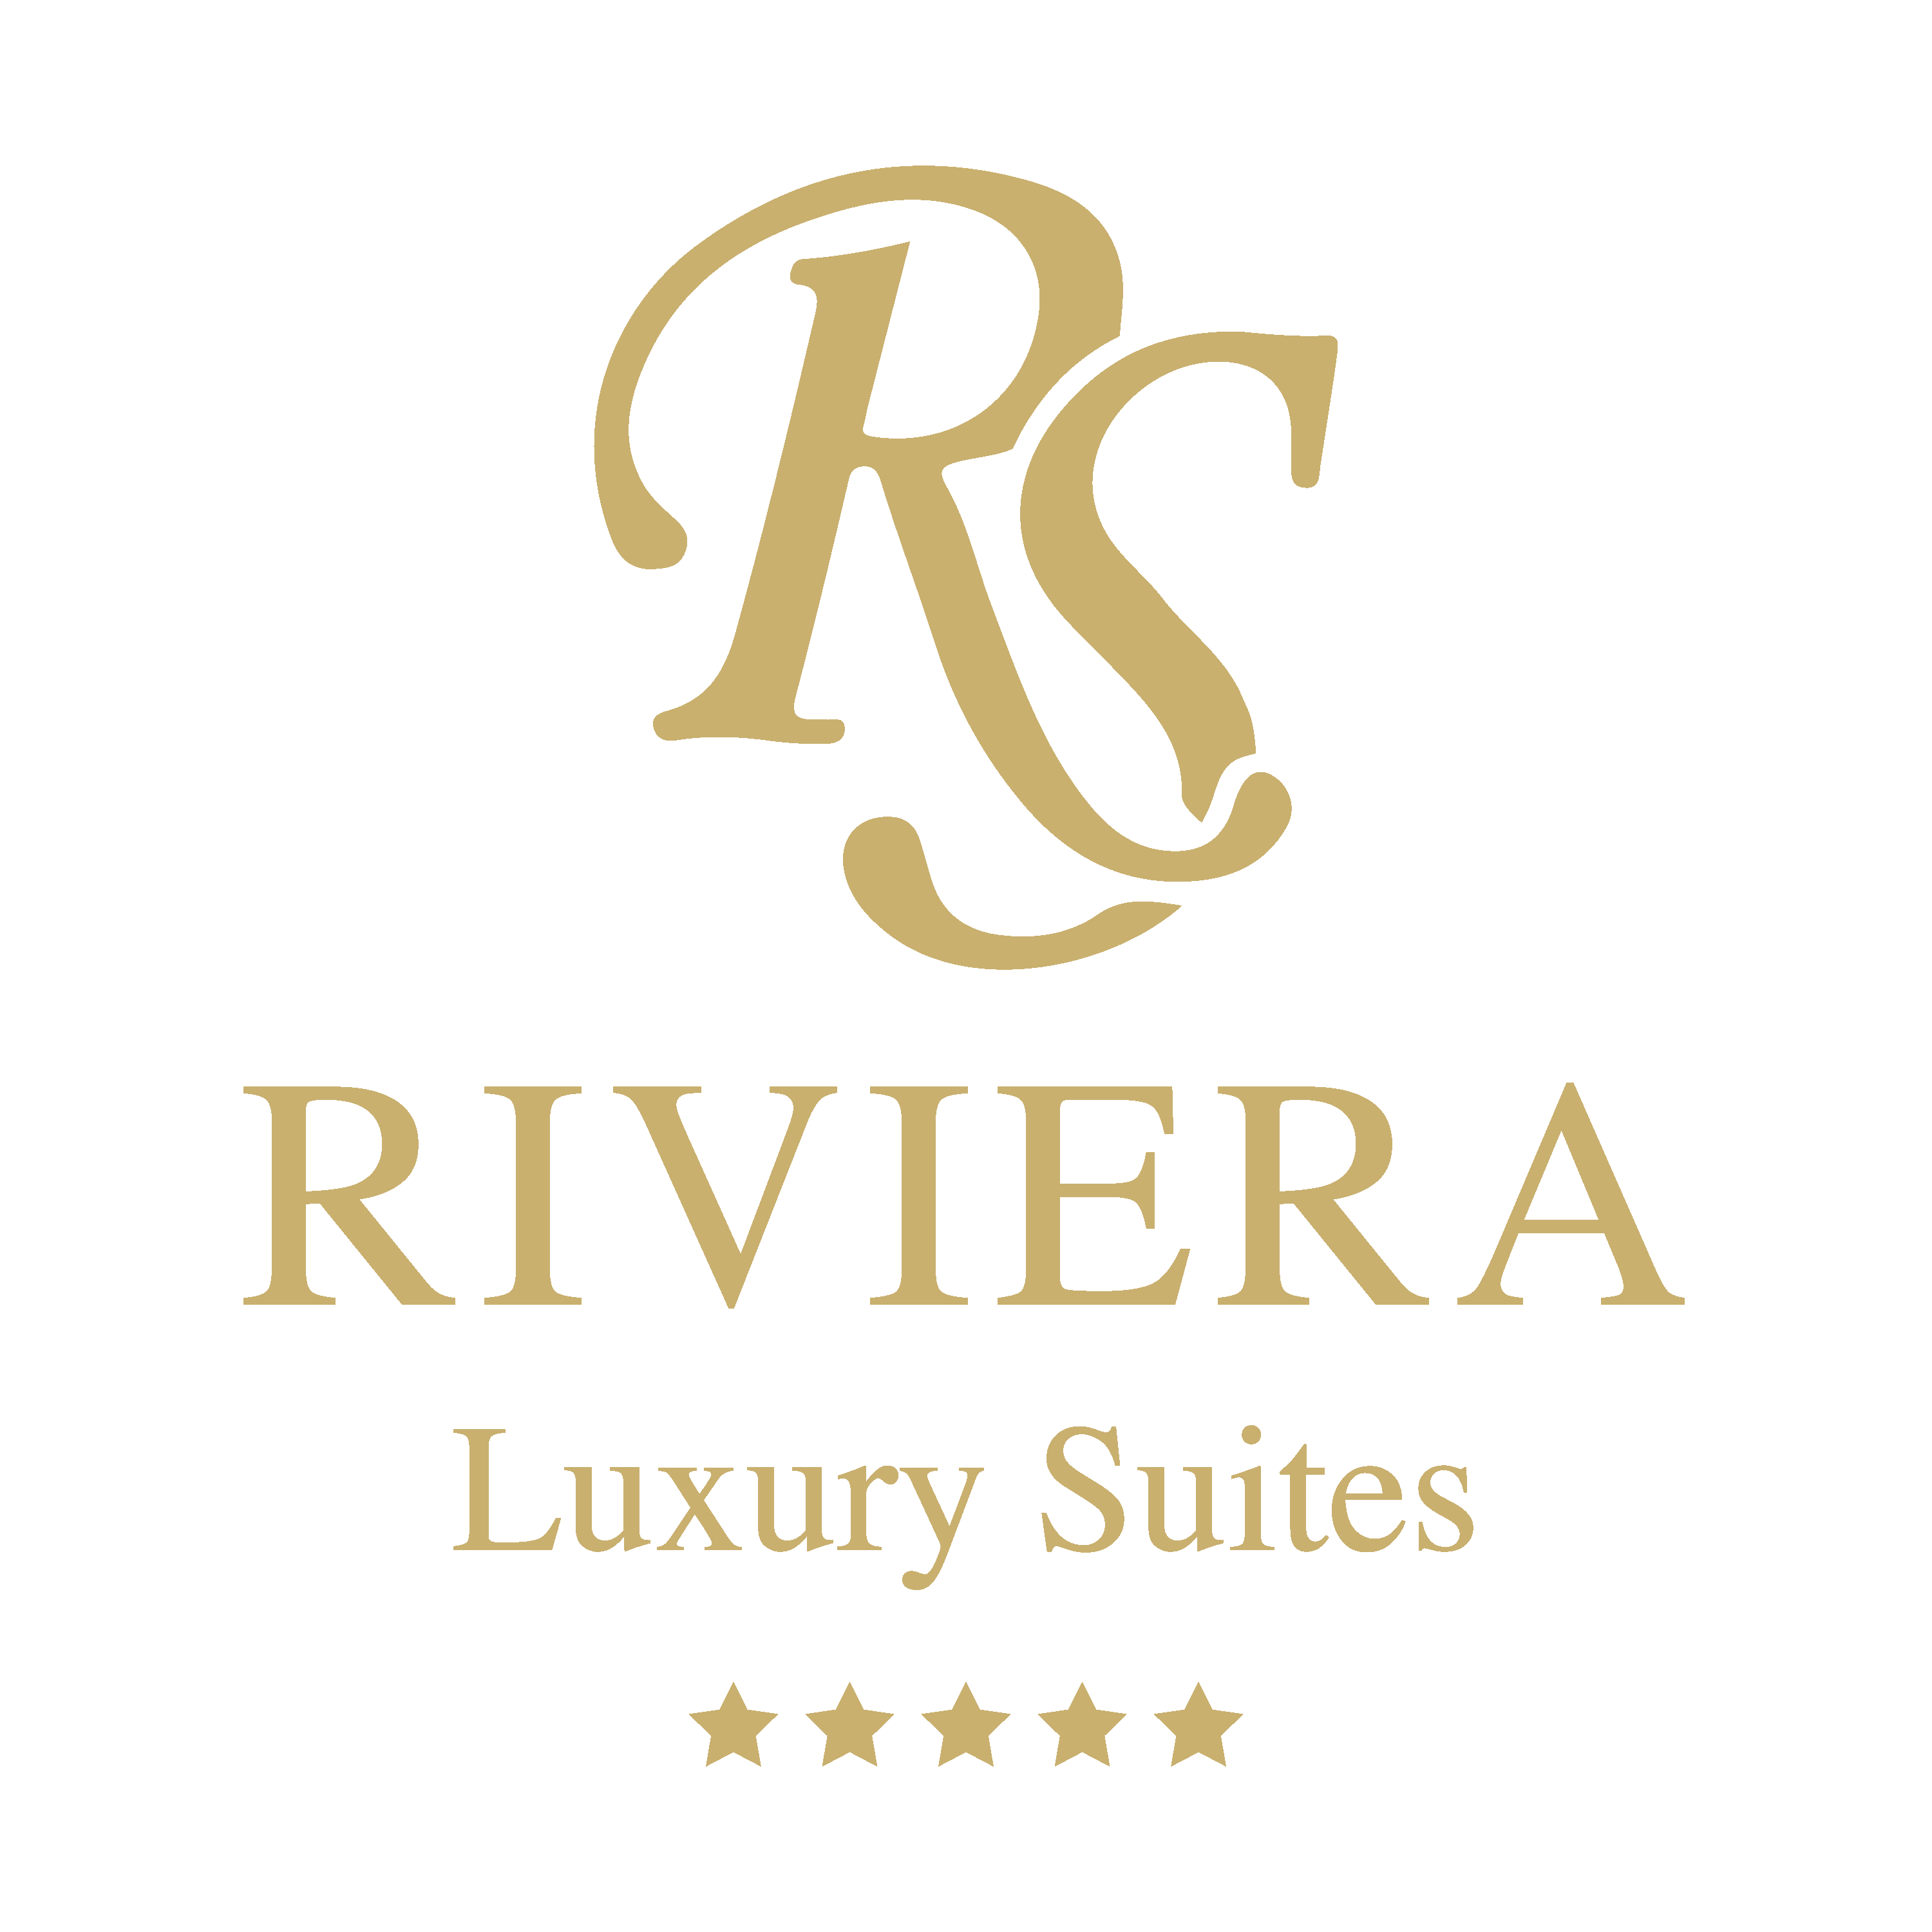 Riviera Luxury Suites